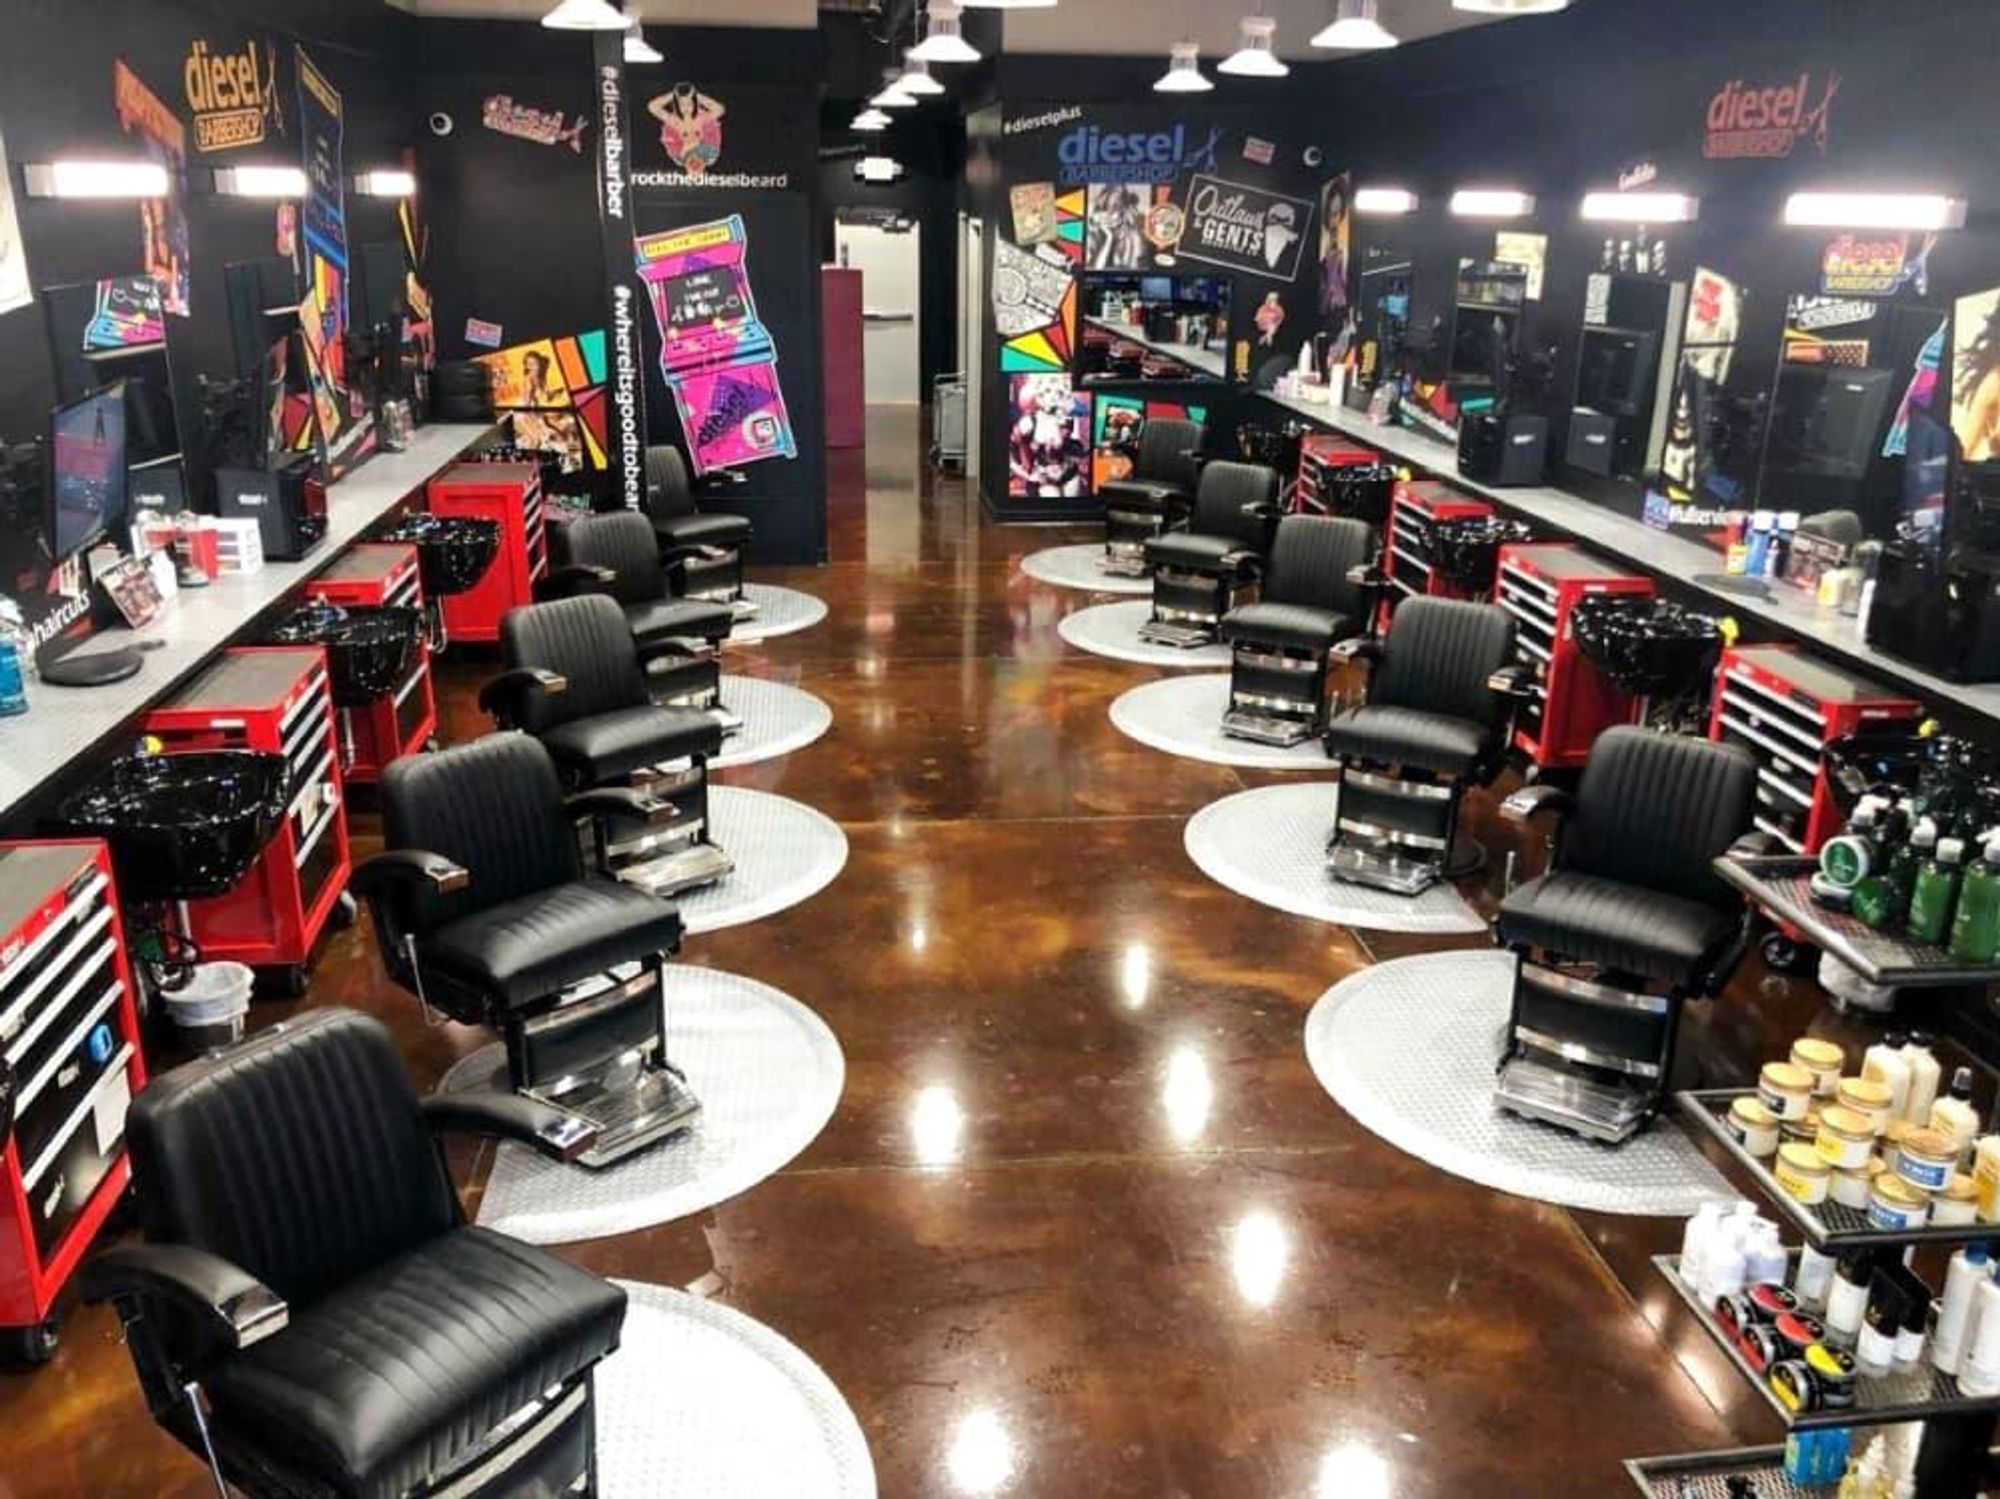 Diesel barbershop